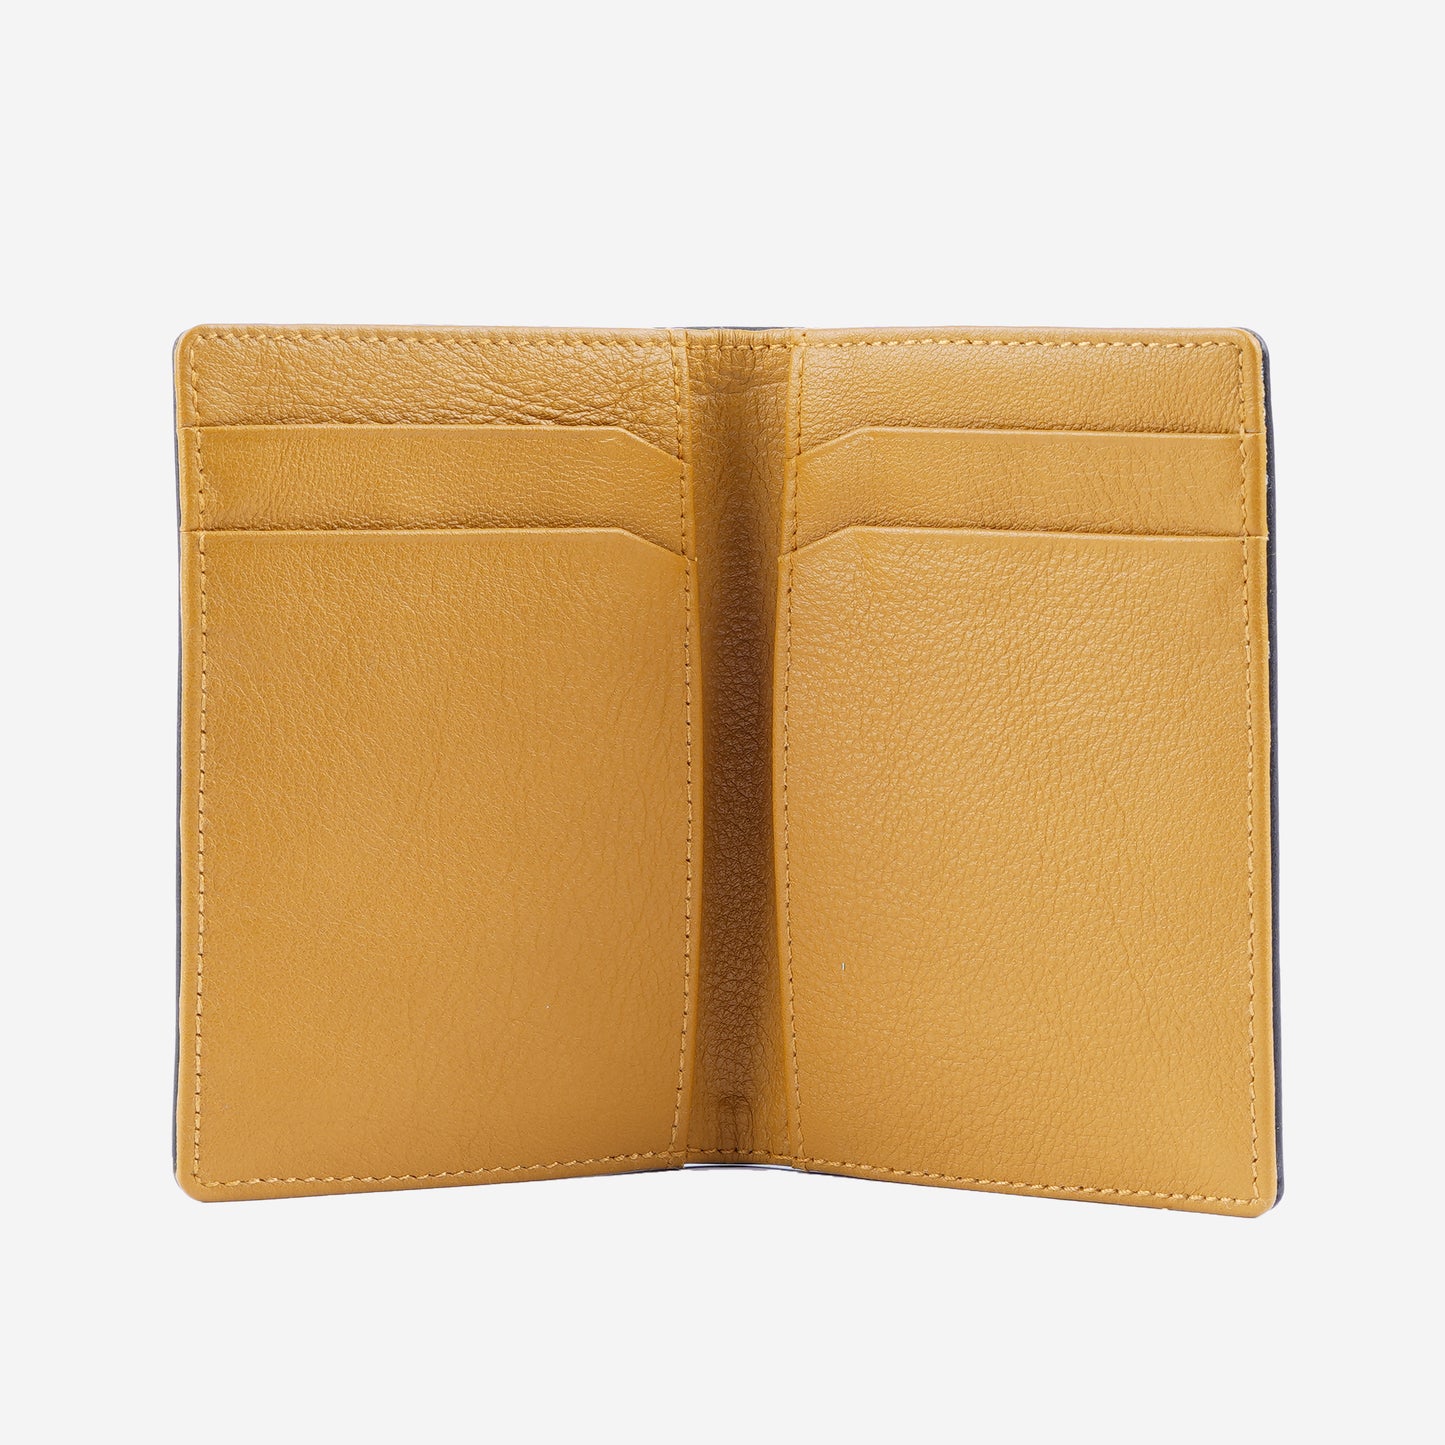 CARLO Bi-Fold Long Leather Wallet